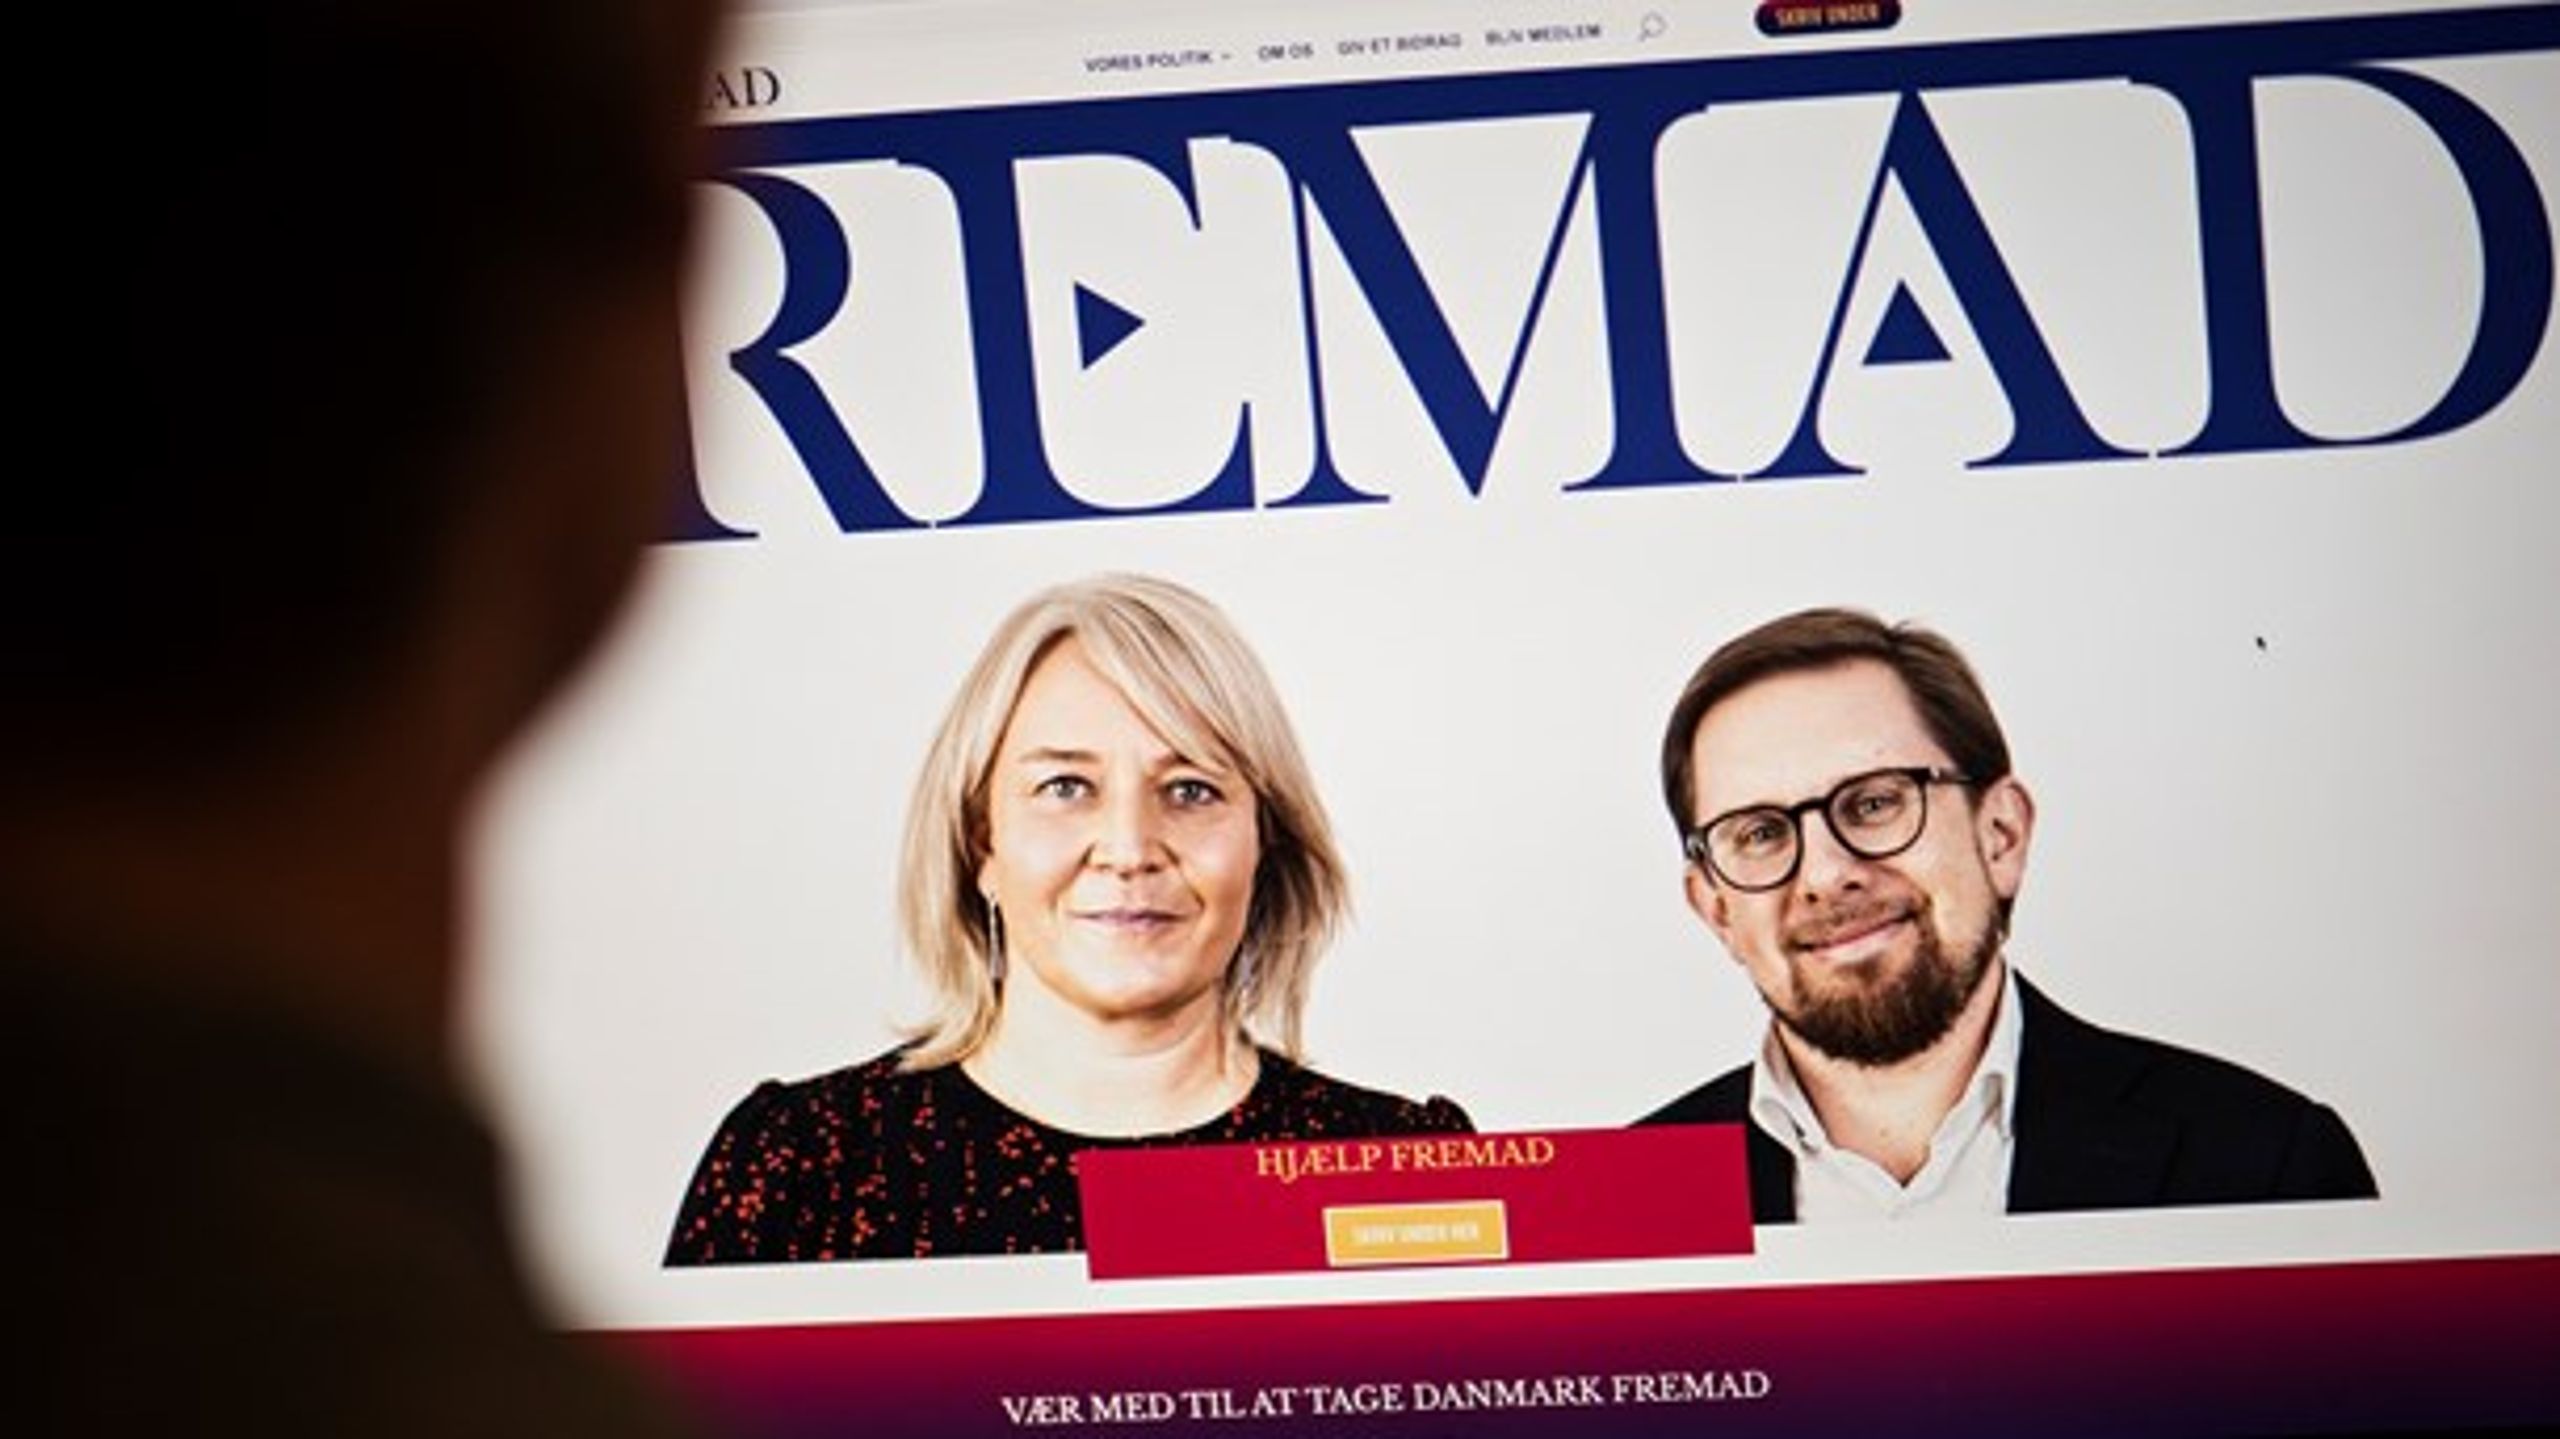 De tidligere LA-profiler Simon Emil Ammitzbøll-Bille og Christina Egelund præsenterede i begyndelsen af november det nye parti Fremad.&nbsp;